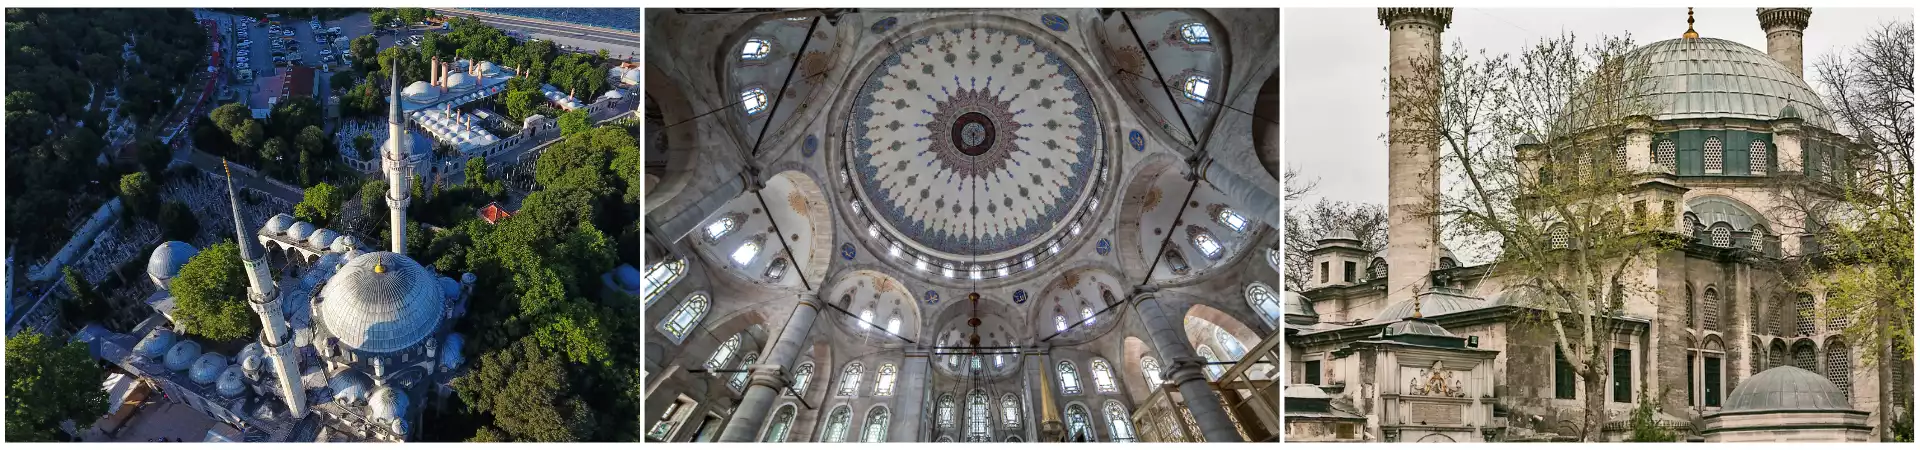 Eyup Sultan Mosque Tour